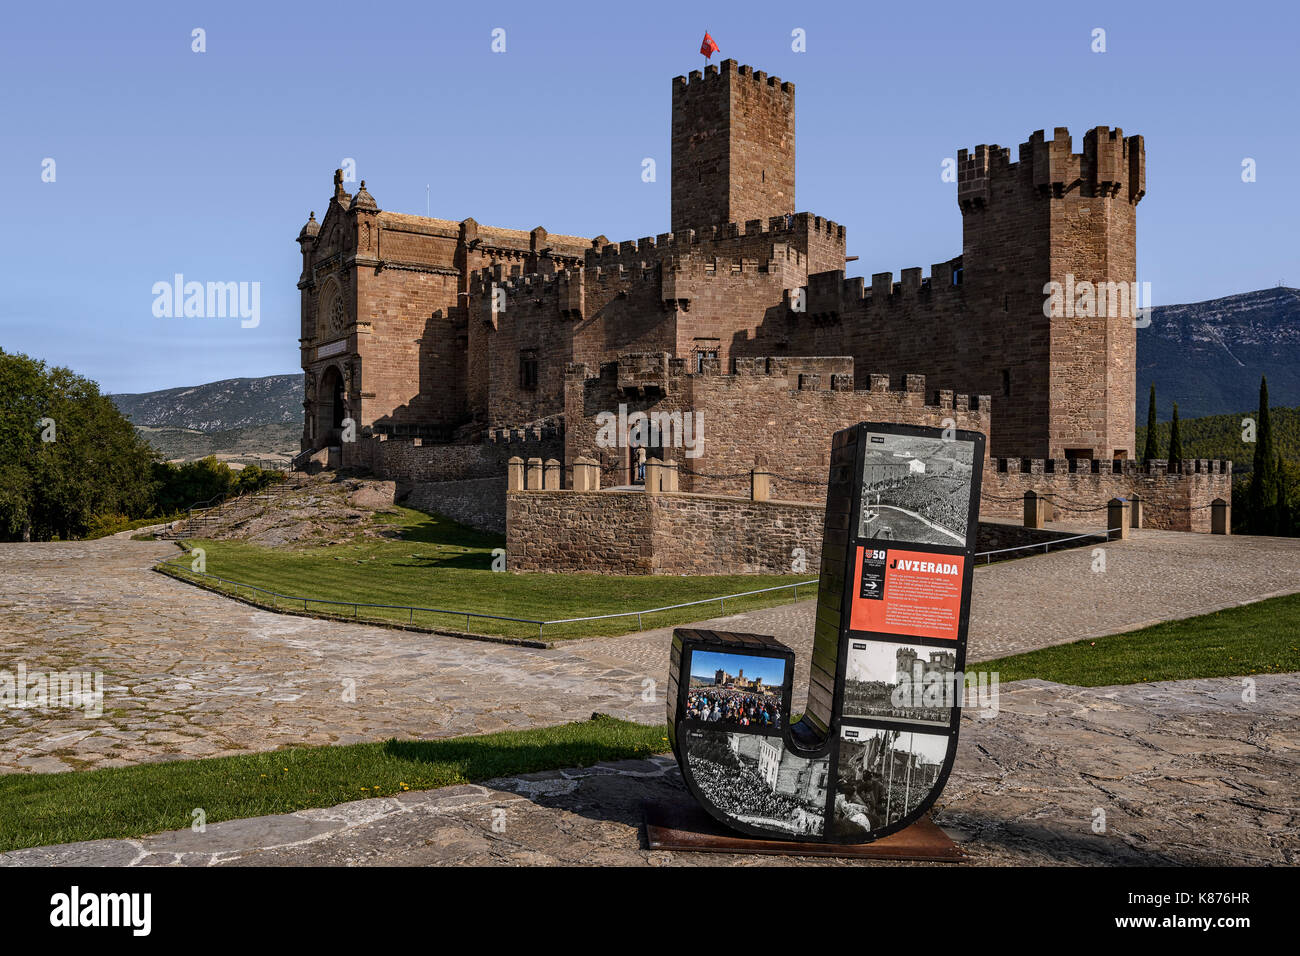 El castillo de Javier, en la provincia de Navarra, región de España. Famoso por ser el lugar de nacimiento de San Francisco Javier. Foto de stock